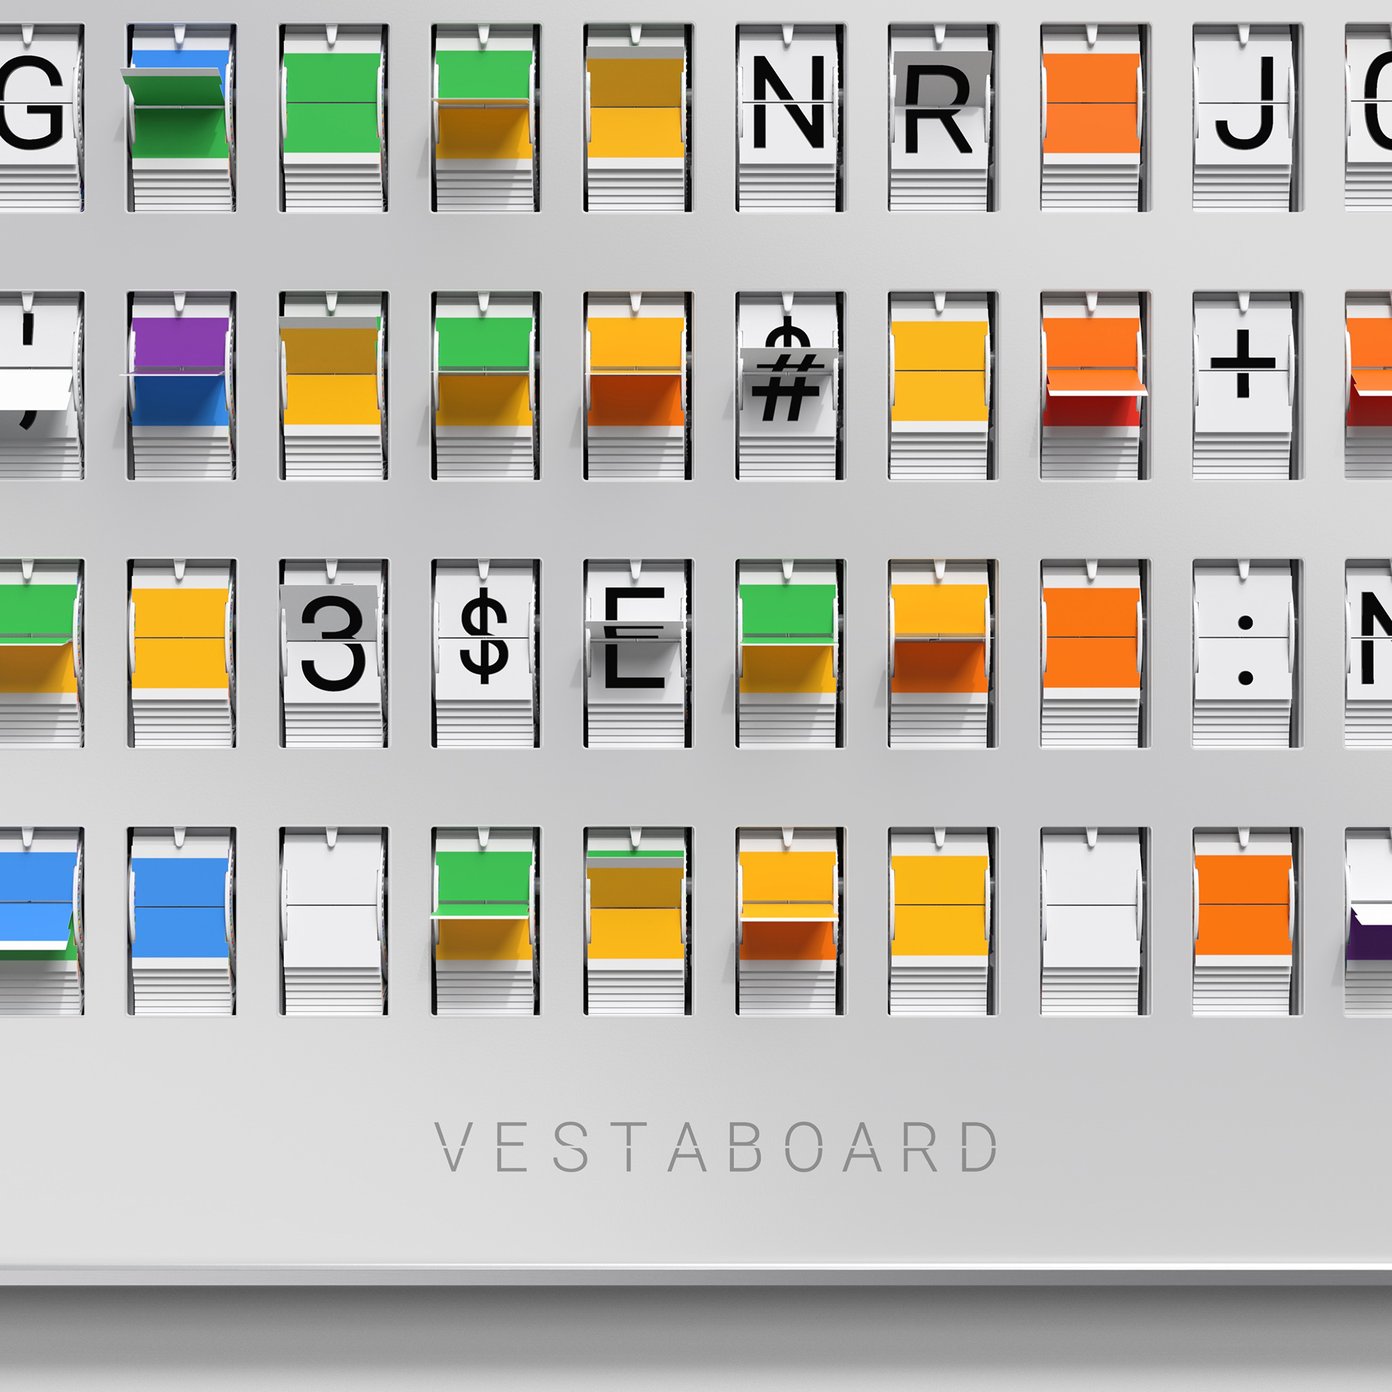 Vestaboard - A Revolutionary Digital Display for Your Home